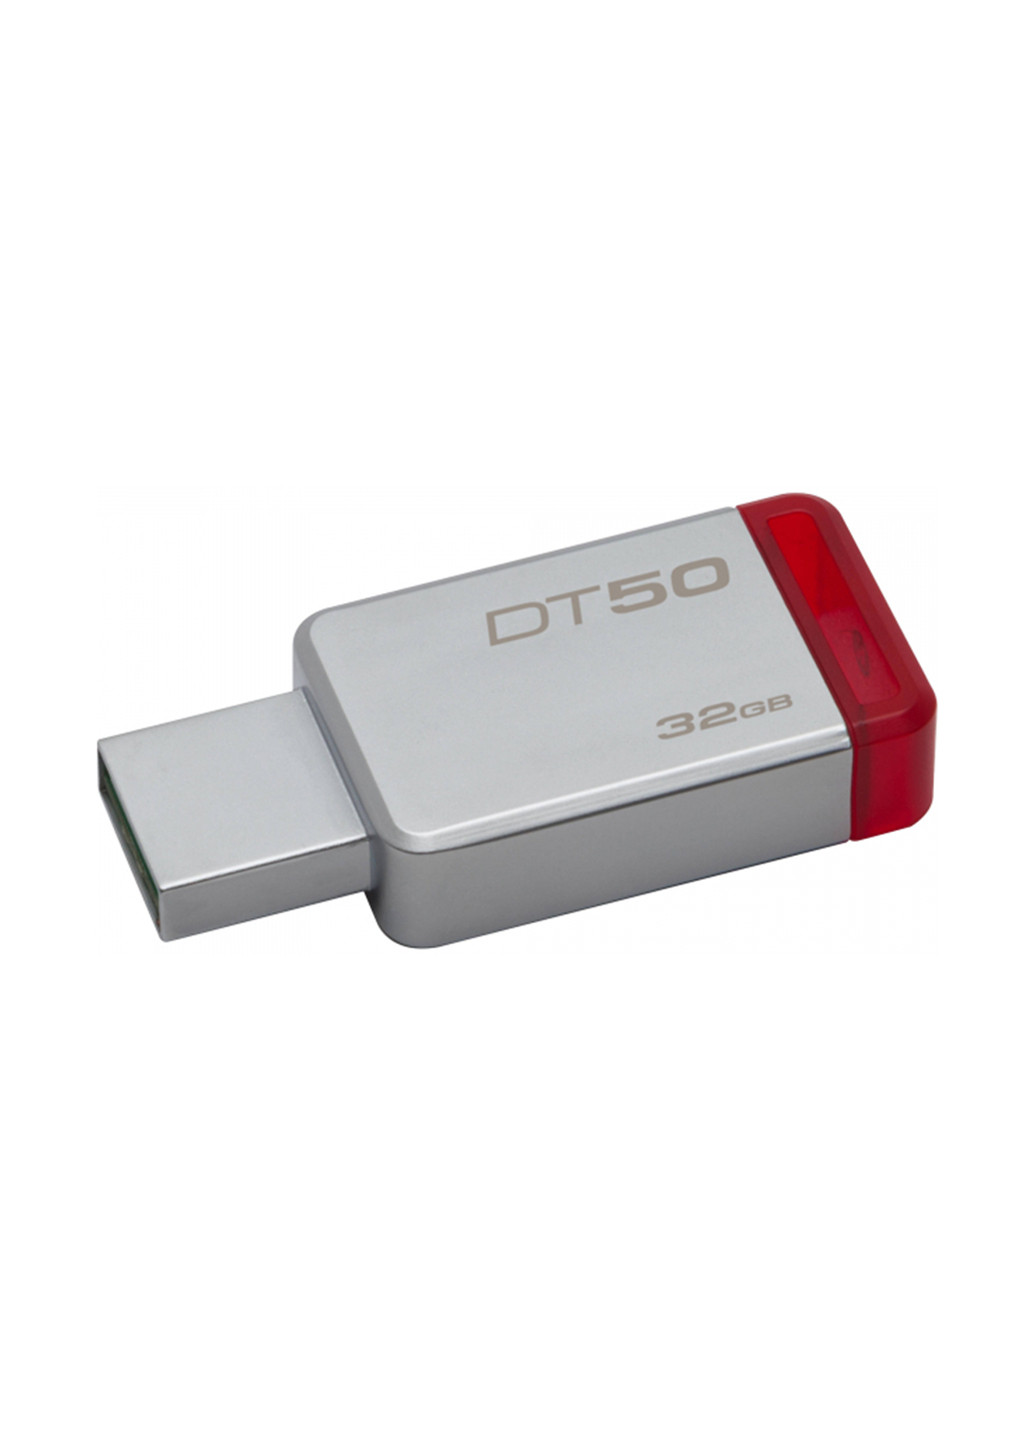 Флеш память USB DataTraveler 50 32GB Red (DT50/32GB) Kingston флеш память usb kingston datatraveler 50 32gb red (dt50/32gb) (136742776)